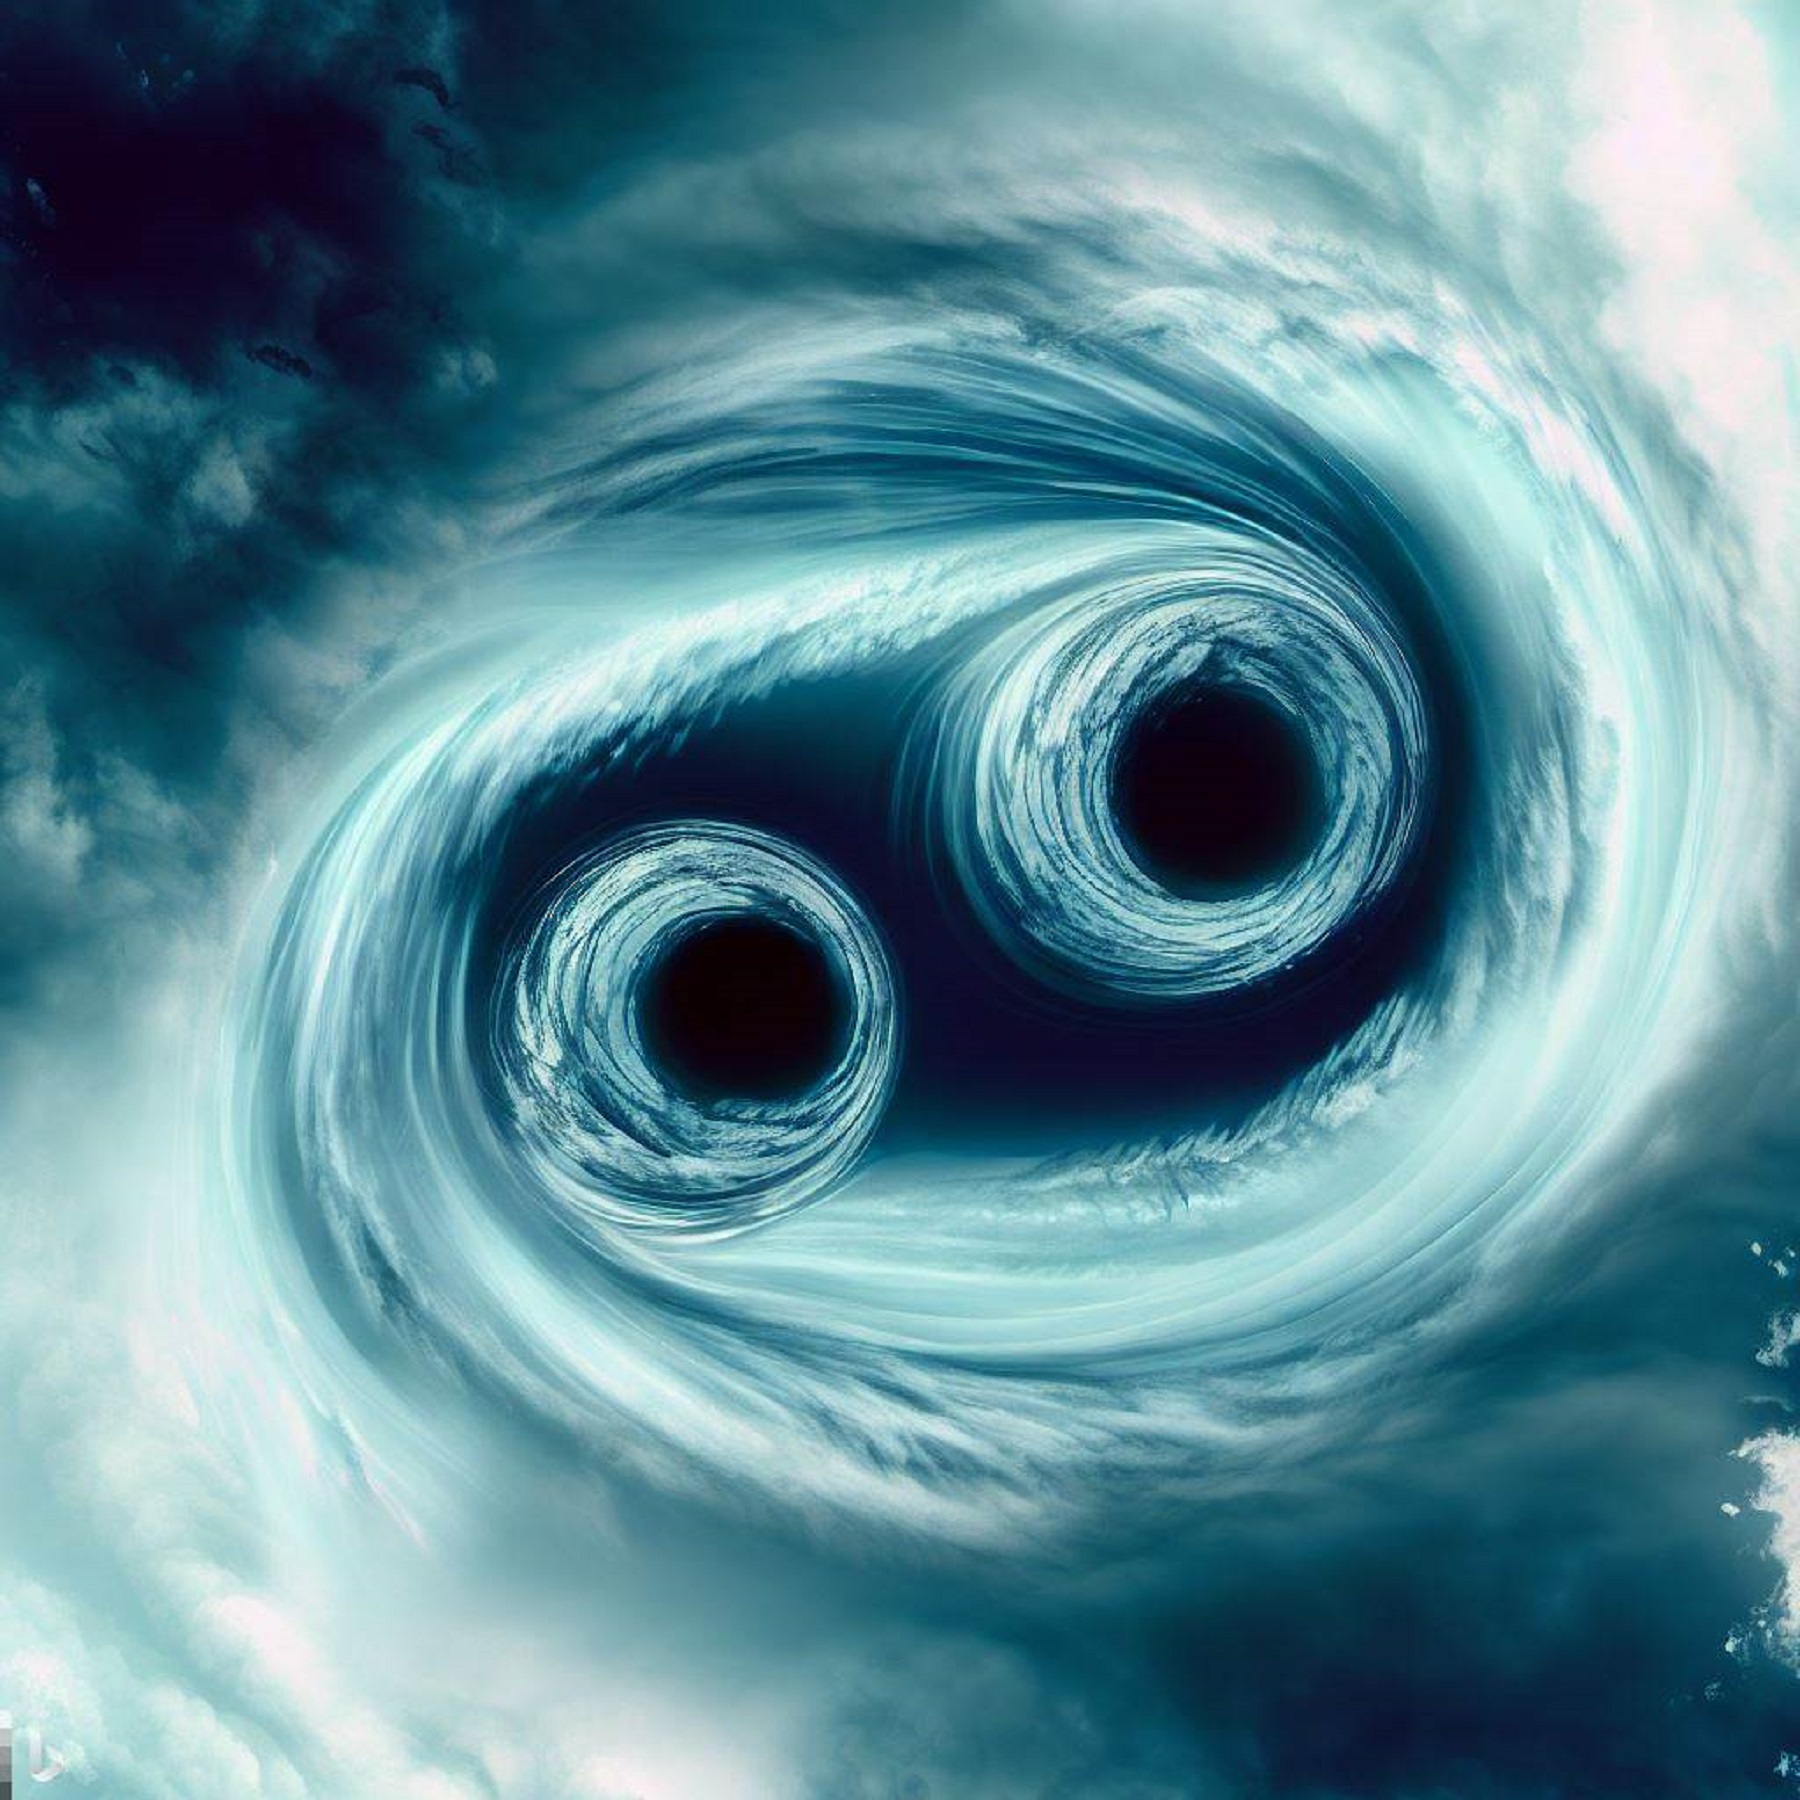 Certains ouragans présentent deux yeux symétriques. © Karine Durand, Image Bing